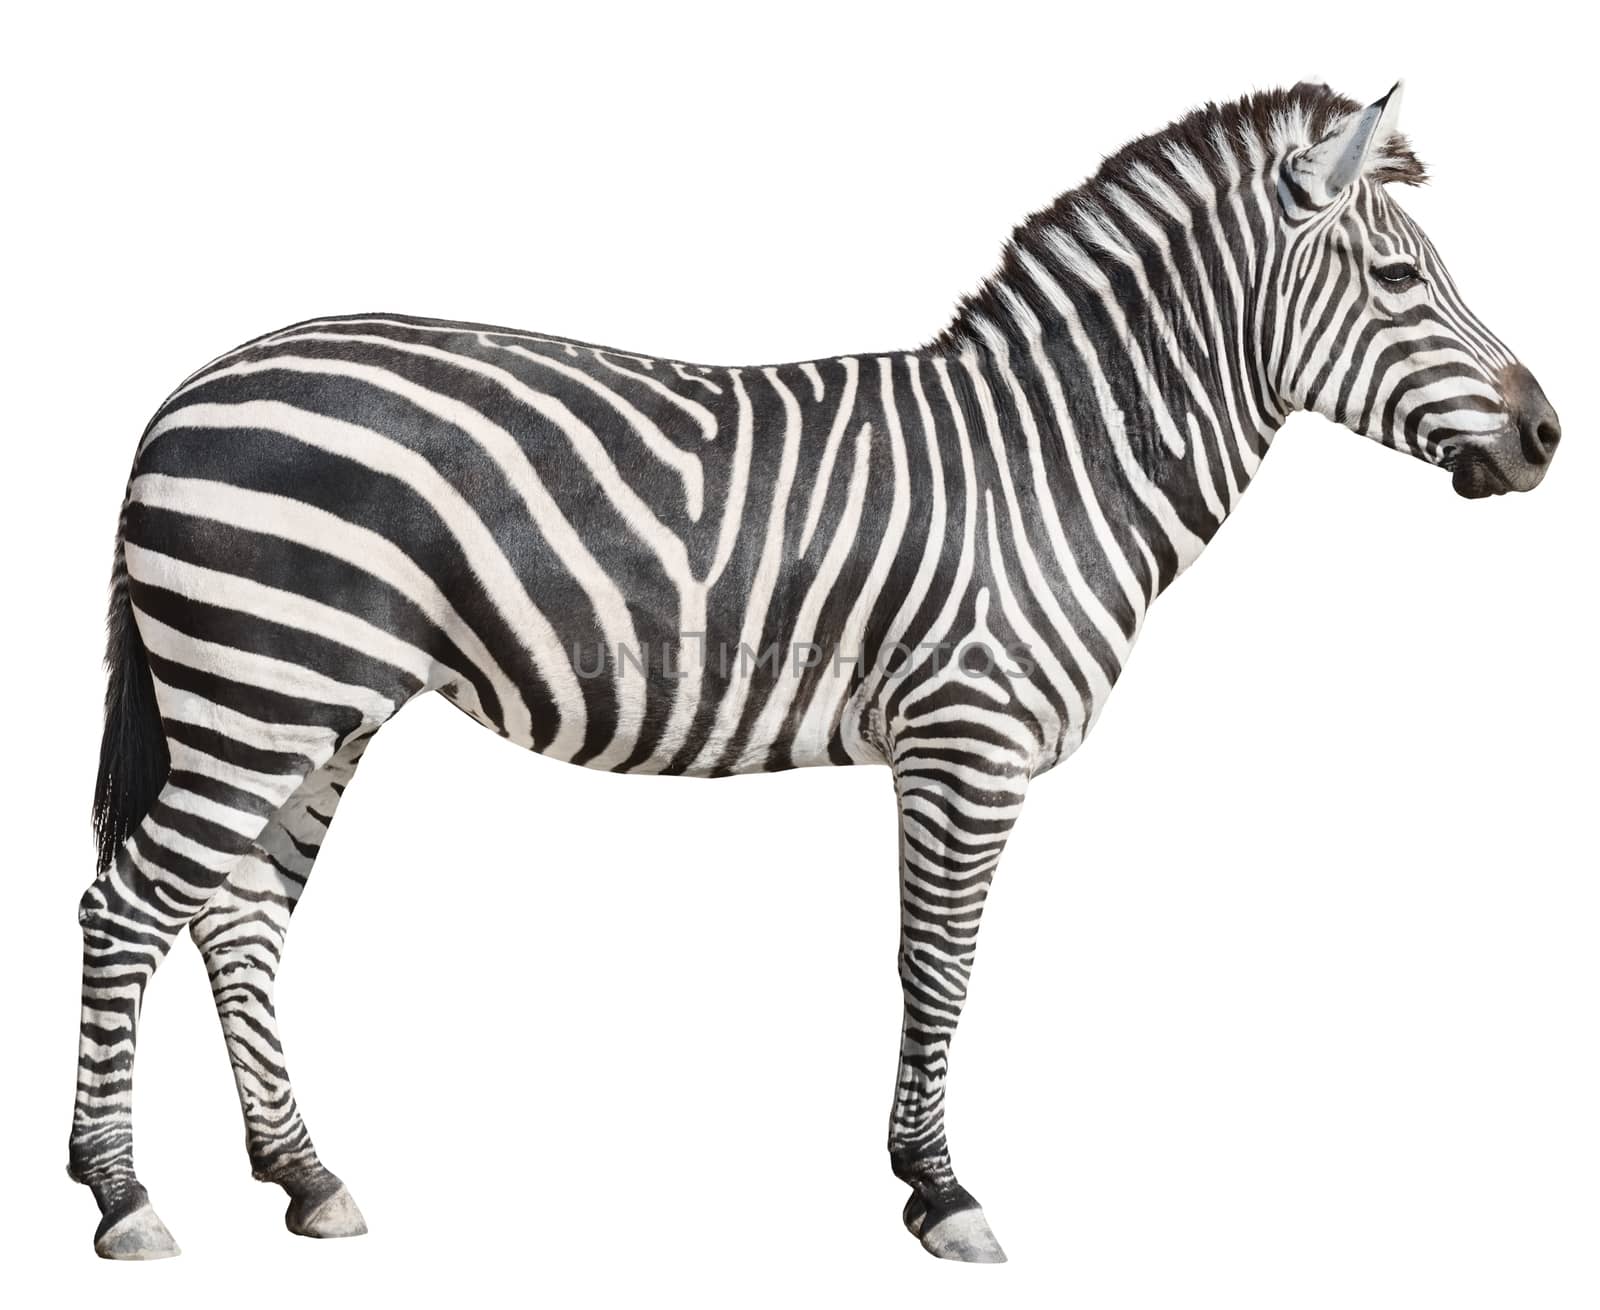 Plain Burchell's Zebra female standing side view on white by vkstudio